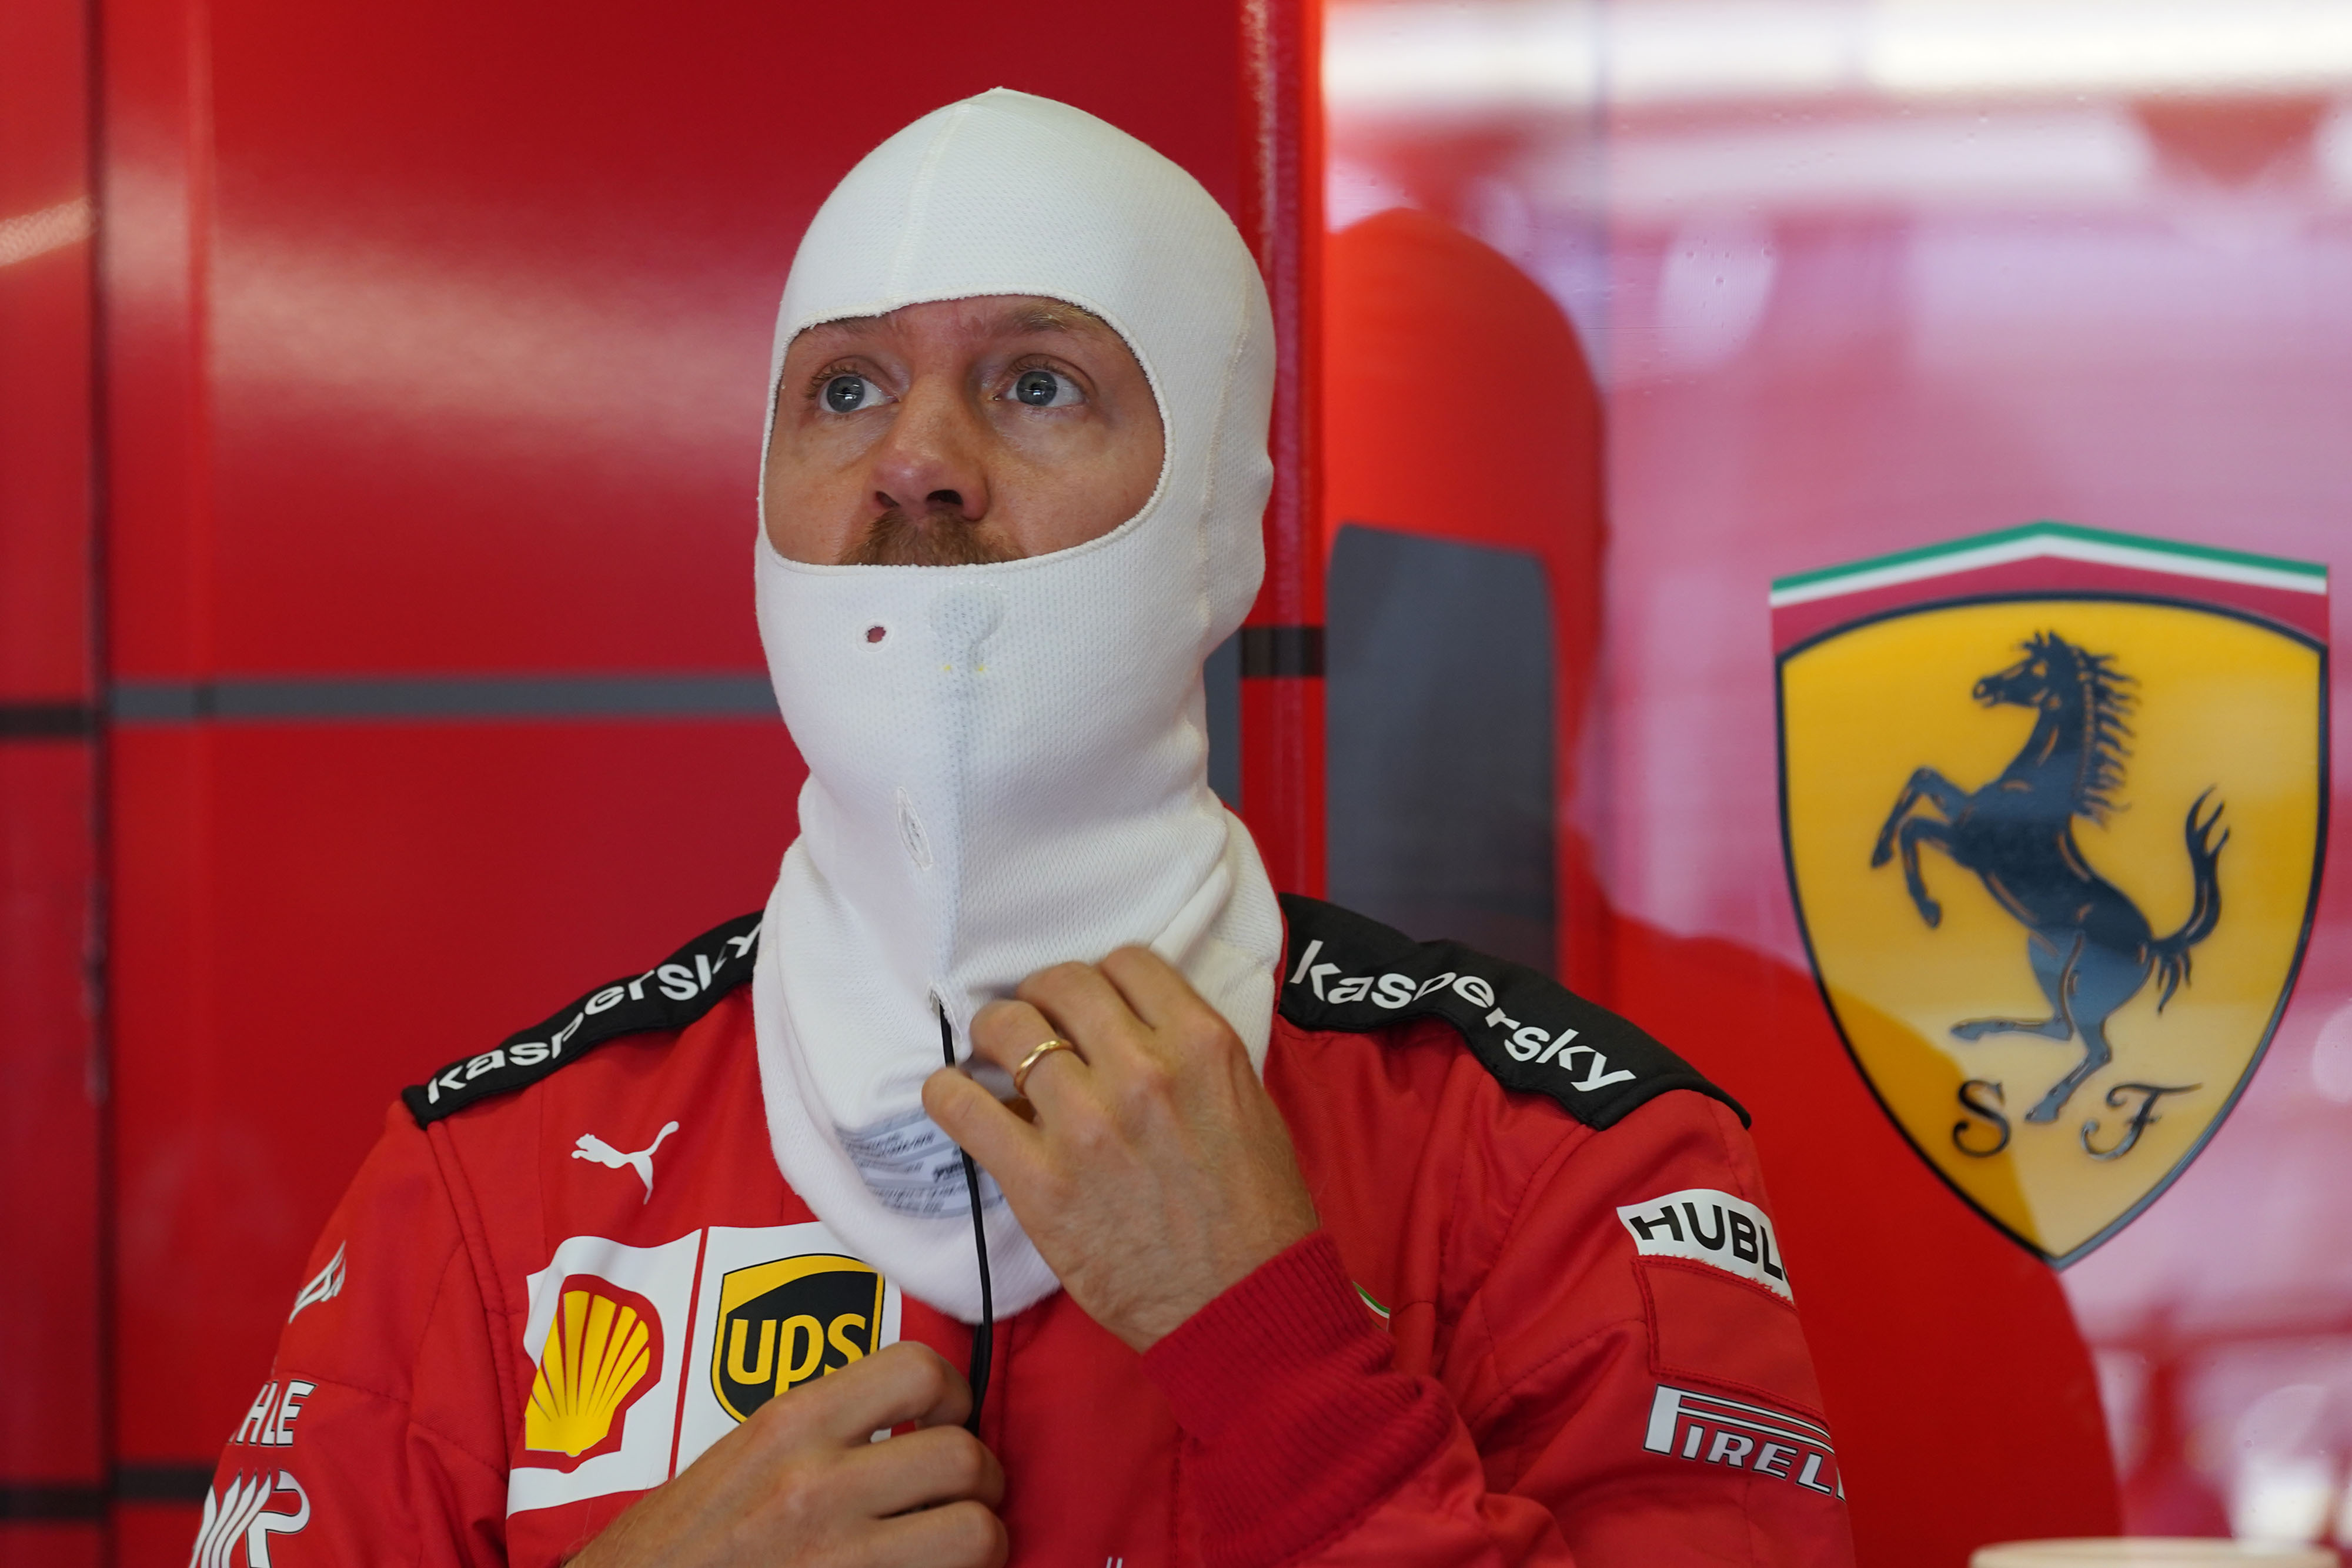 Sebastian Vettel, Ferrari, Austria, 2020